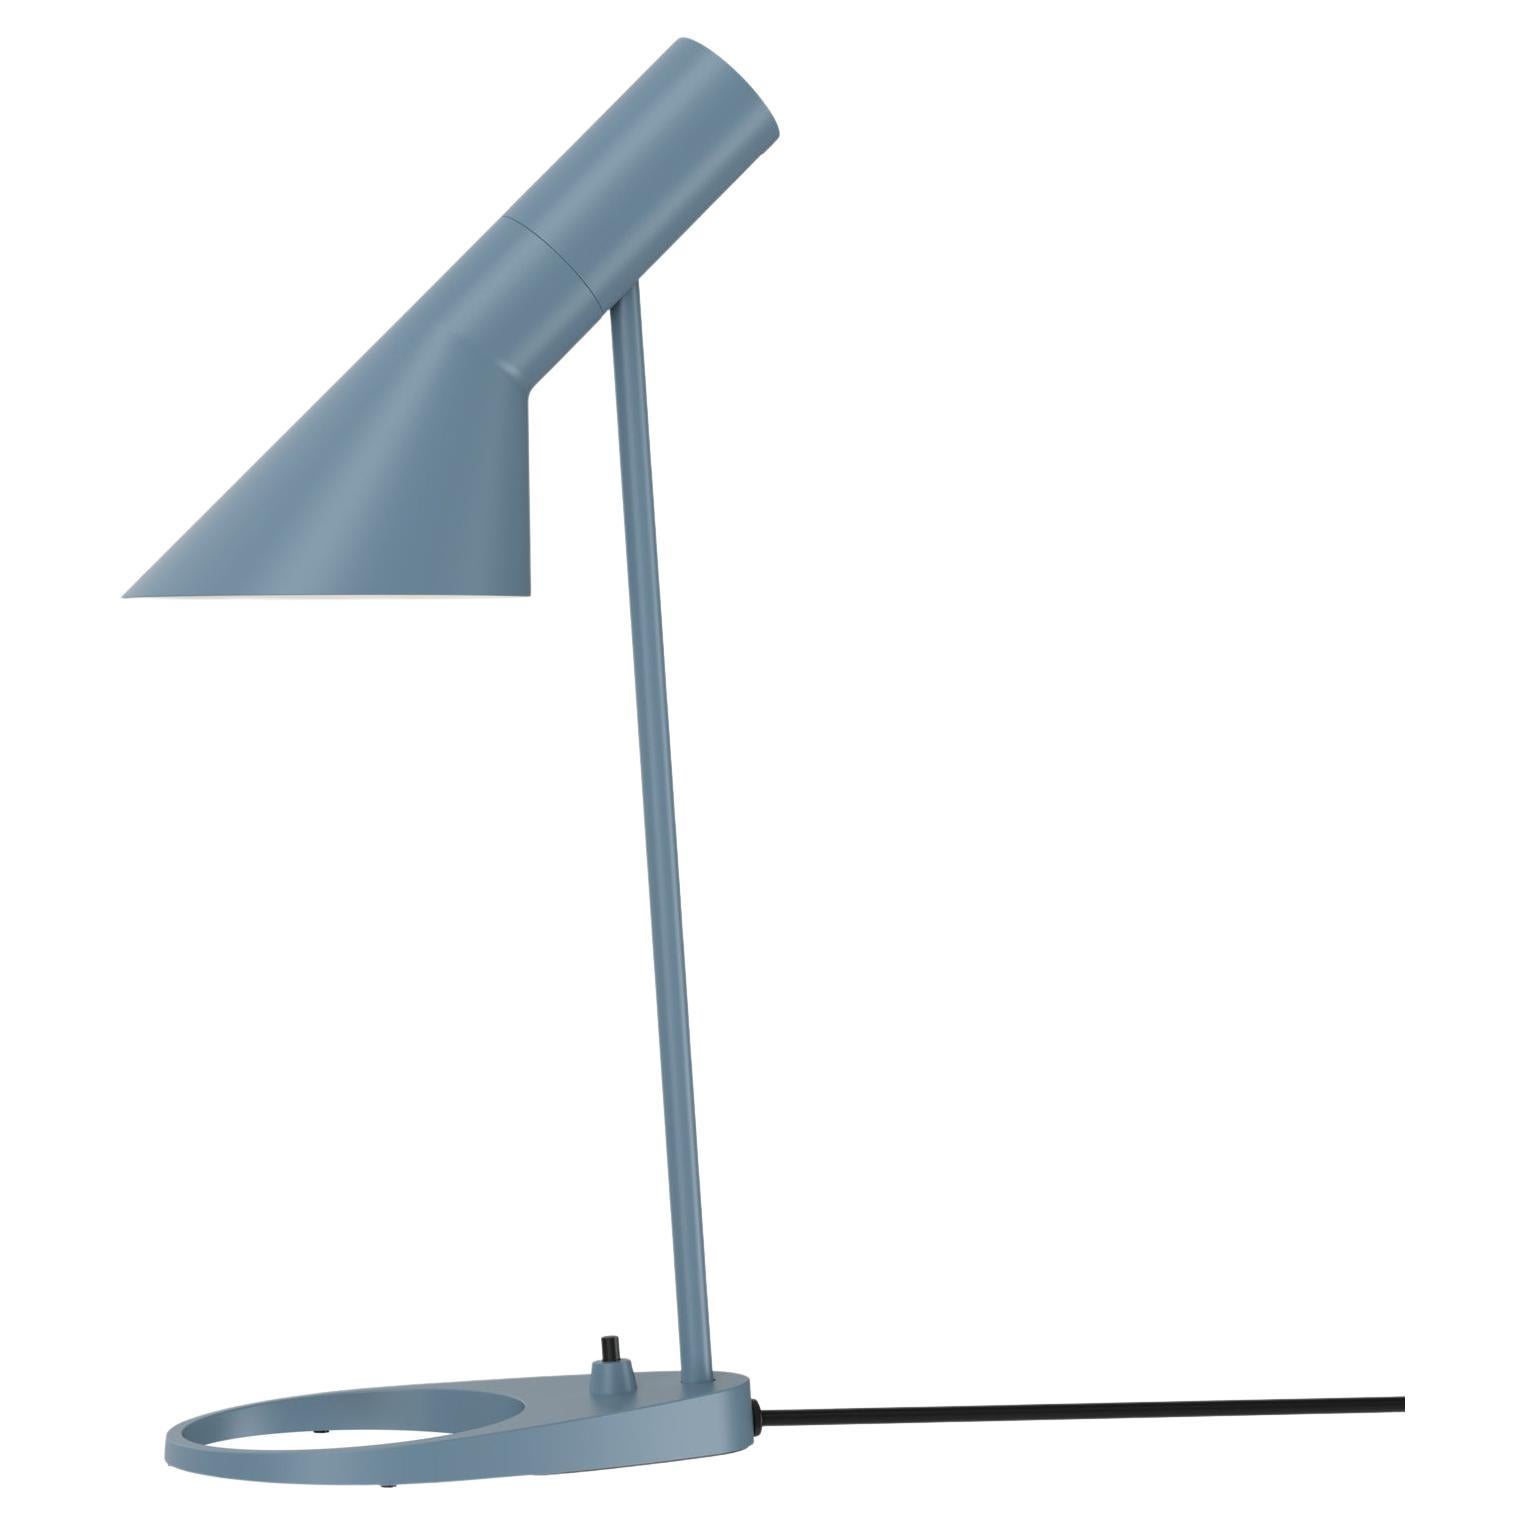 Arne Jacobsen 'AJ Mini' Table Lamp in Dusty Blue for Louis Poulsen For Sale